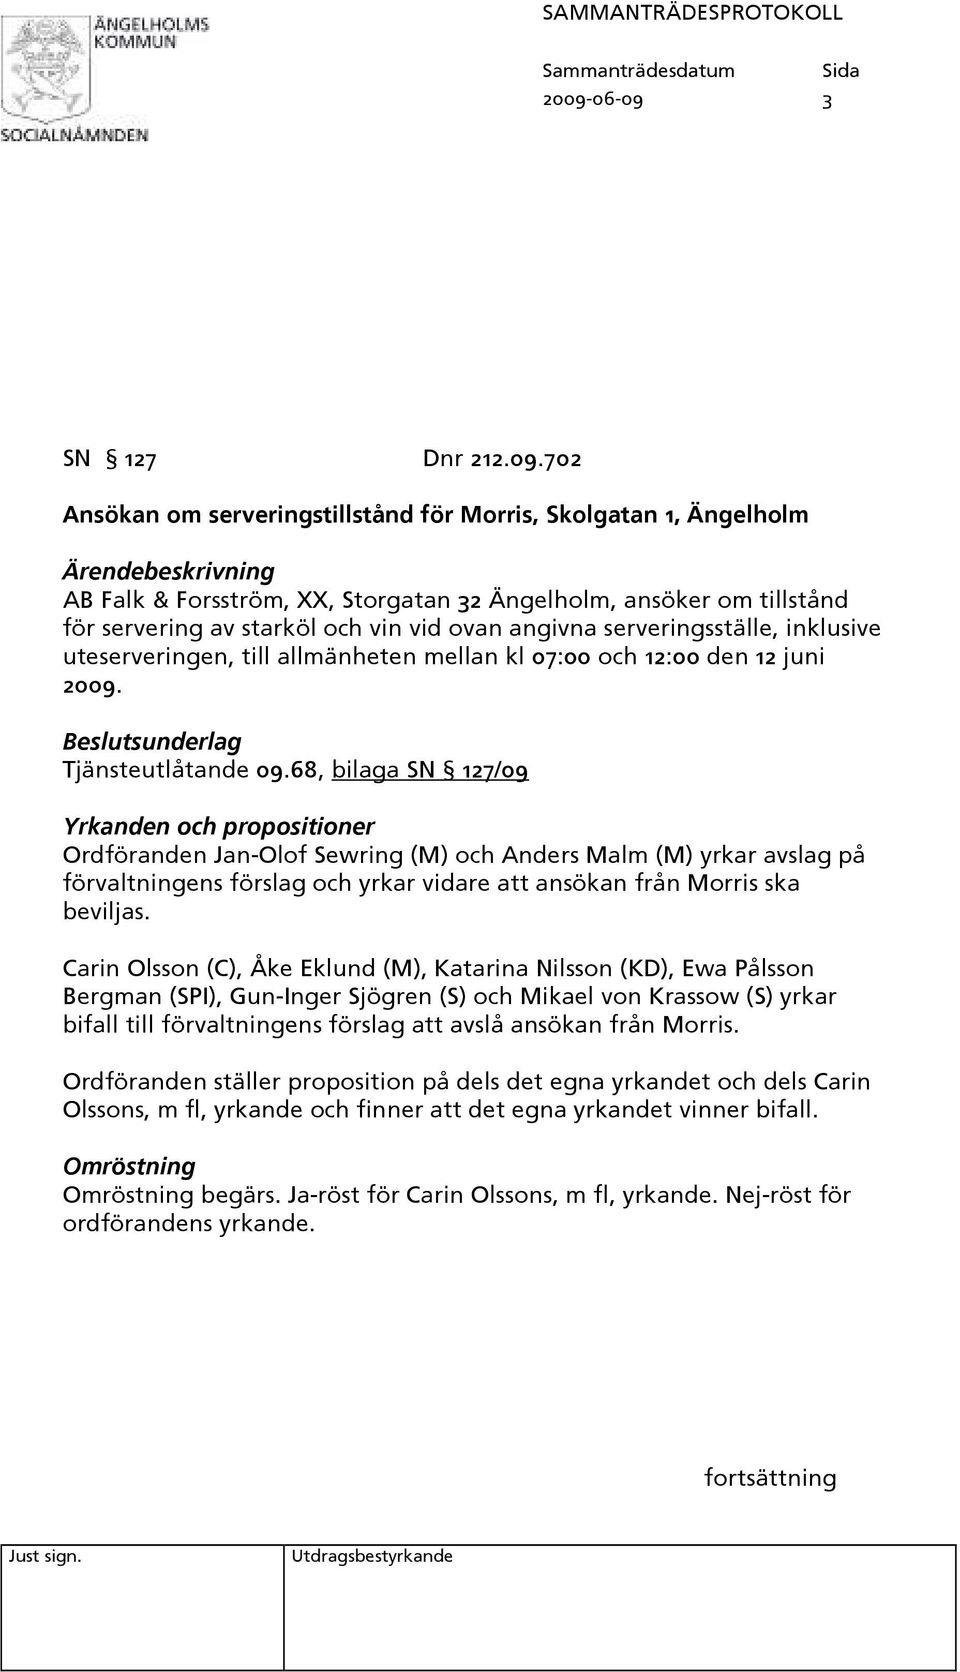 68, bilaga SN 127/09 Yrkanden och propositioner Ordföranden Jan-Olof Sewring (M) och Anders Malm (M) yrkar avslag på förvaltningens förslag och yrkar vidare att ansökan från Morris ska beviljas.